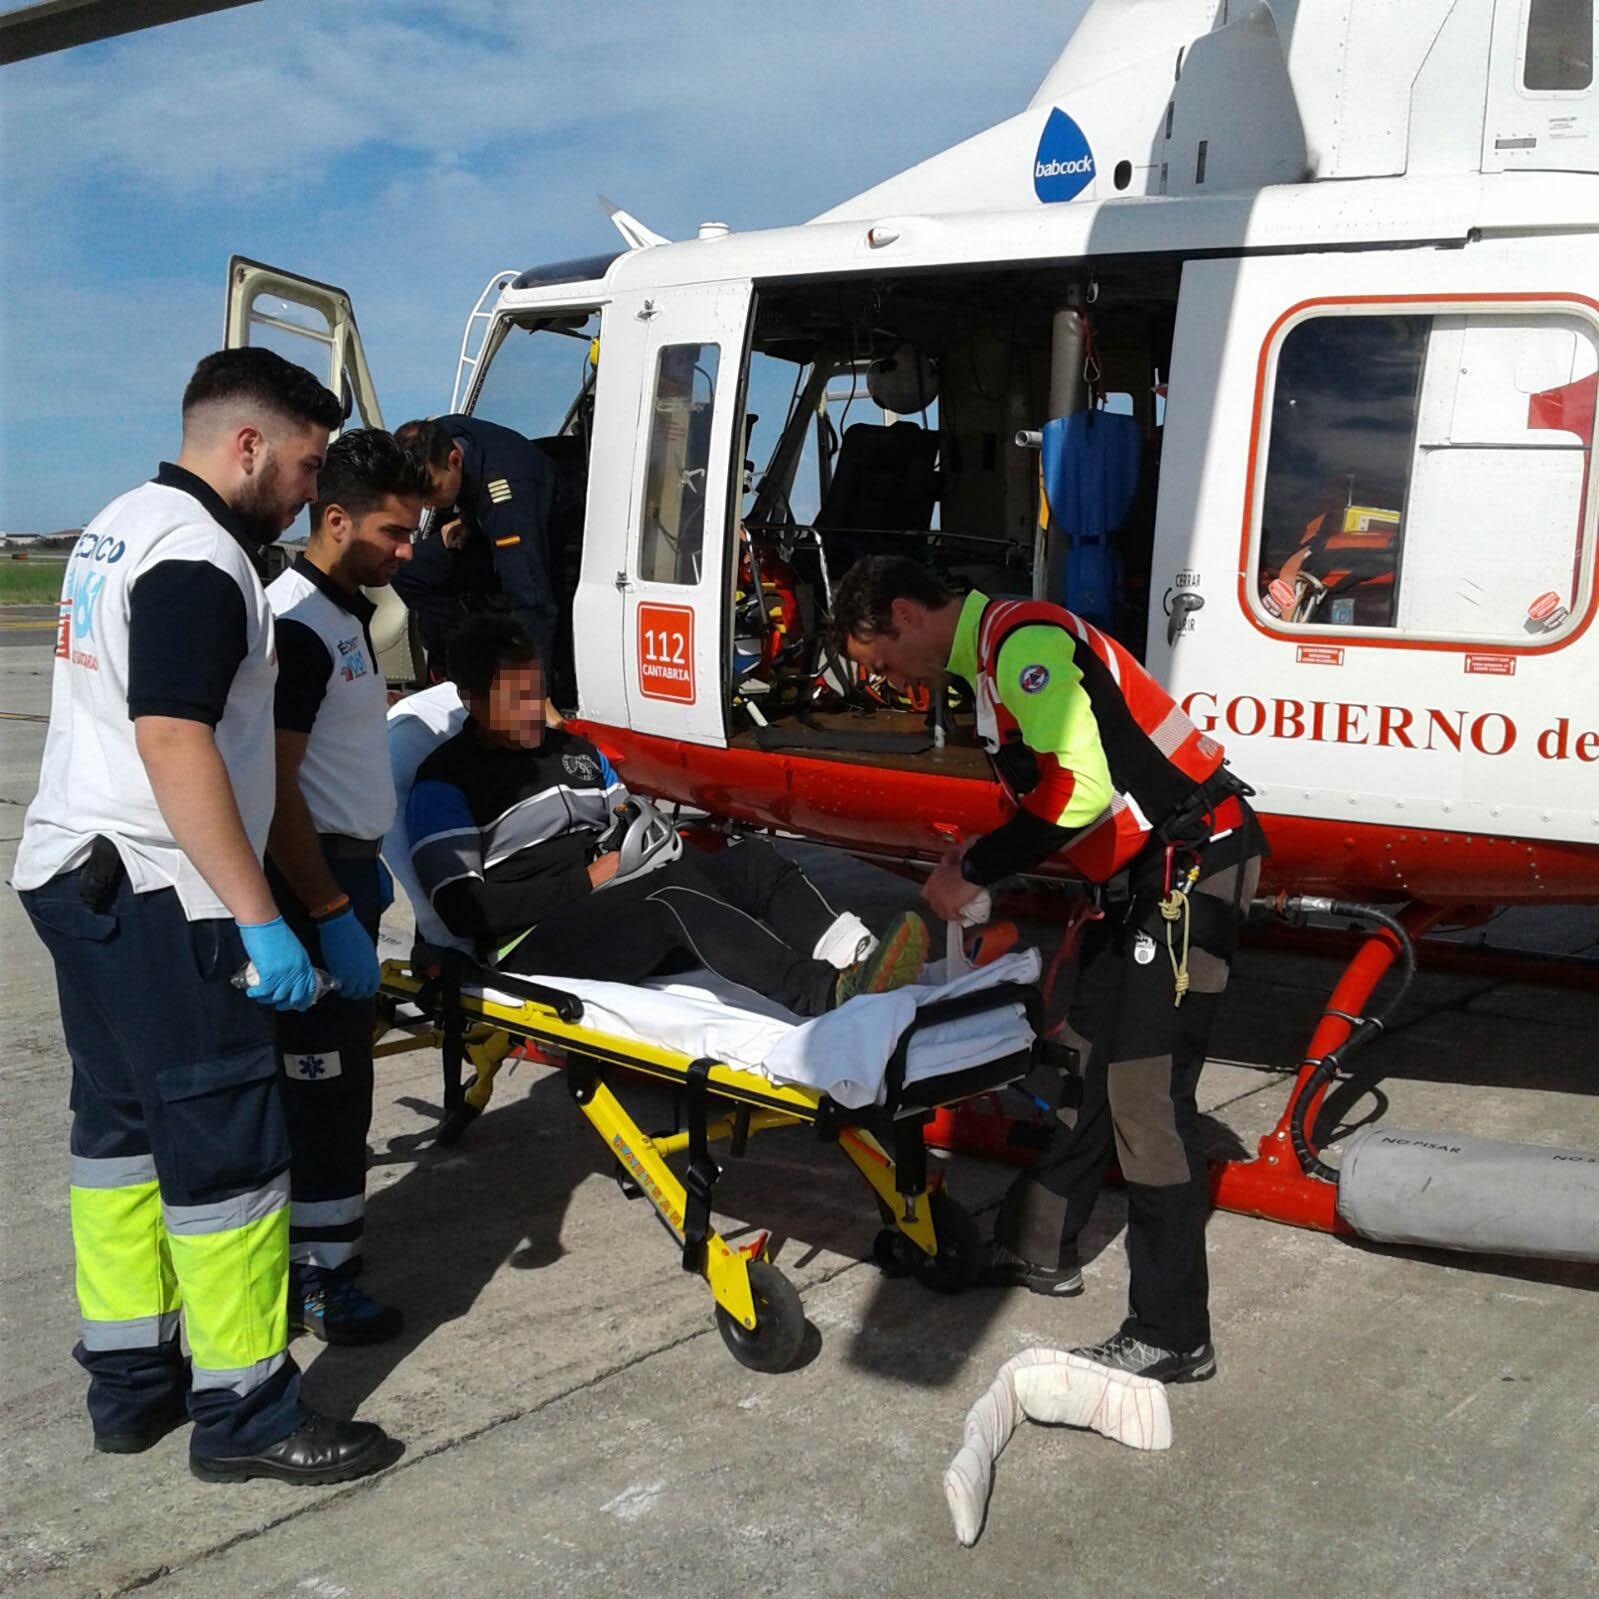 El helicóptero del Gobierno rescata a un escalador con rotura de tibia en Picos de Europa